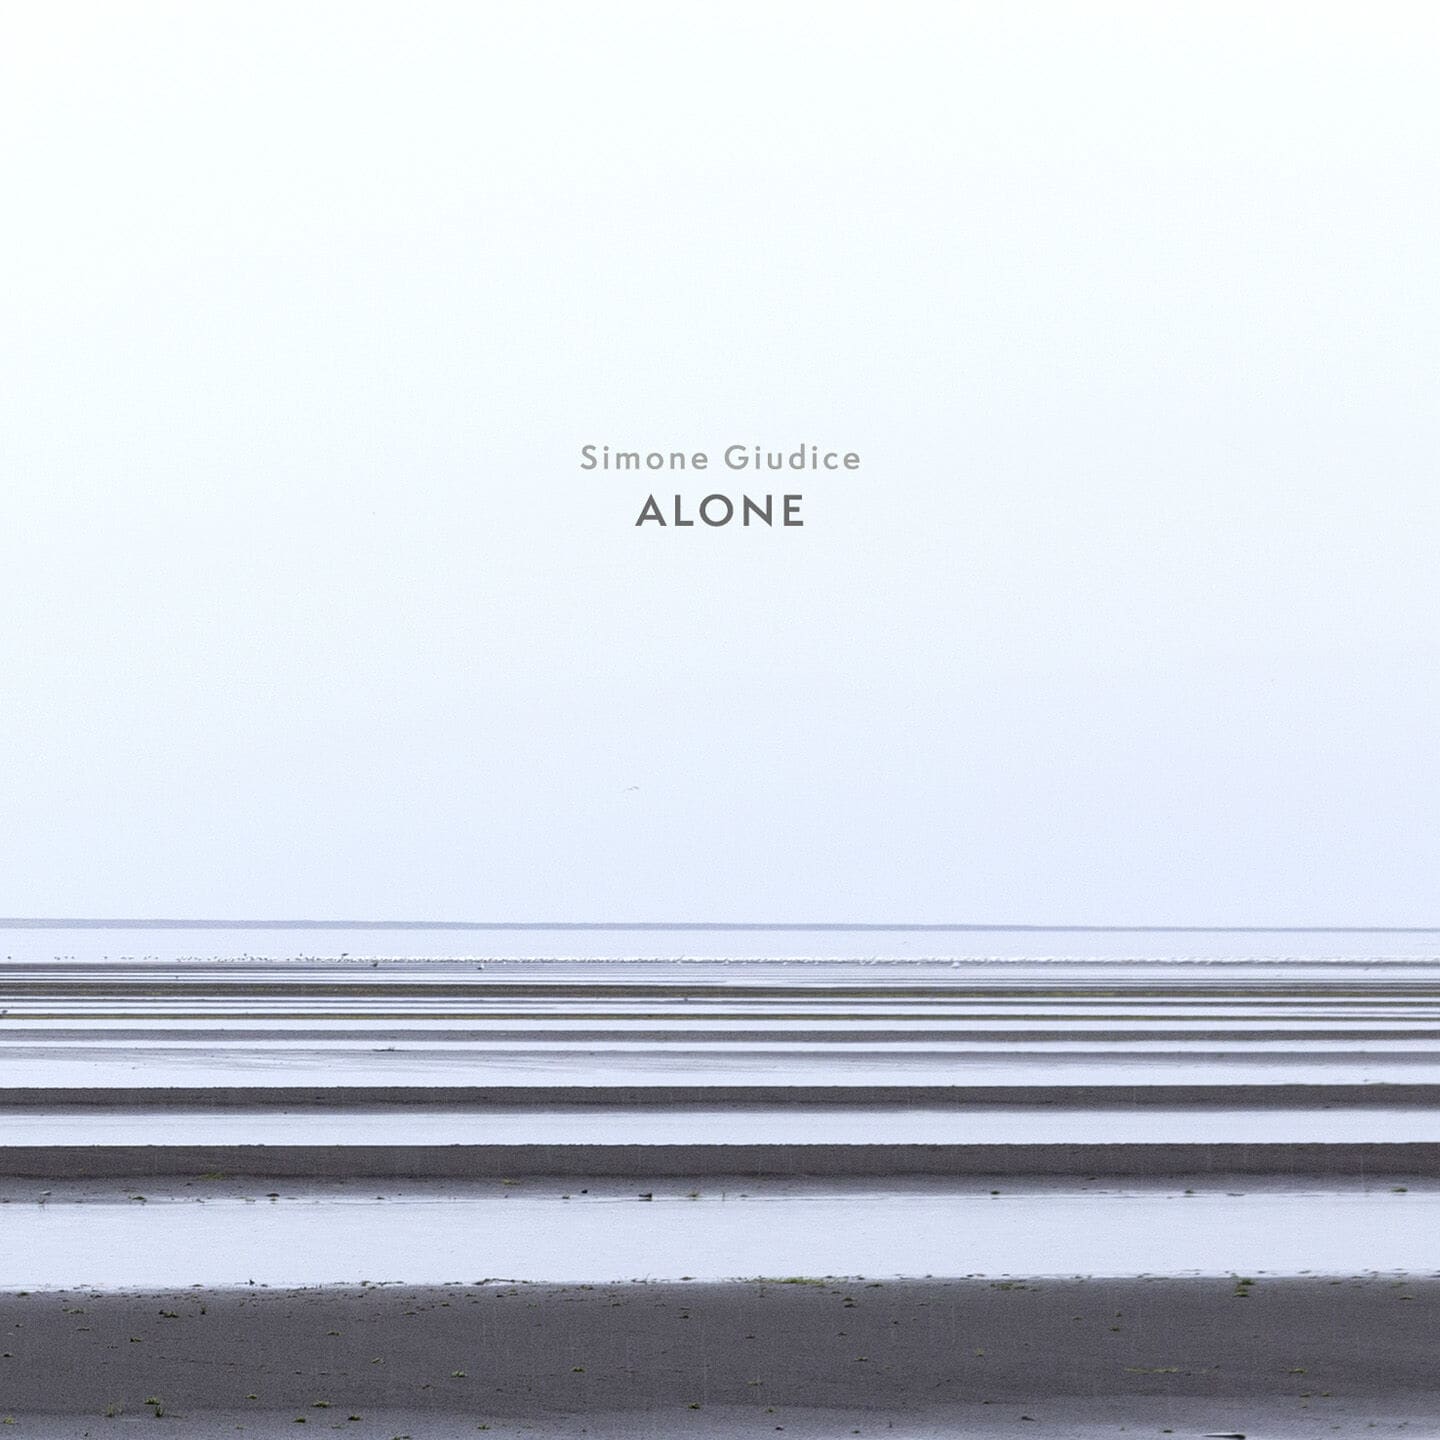 image cover: Simone Giudice - Alone